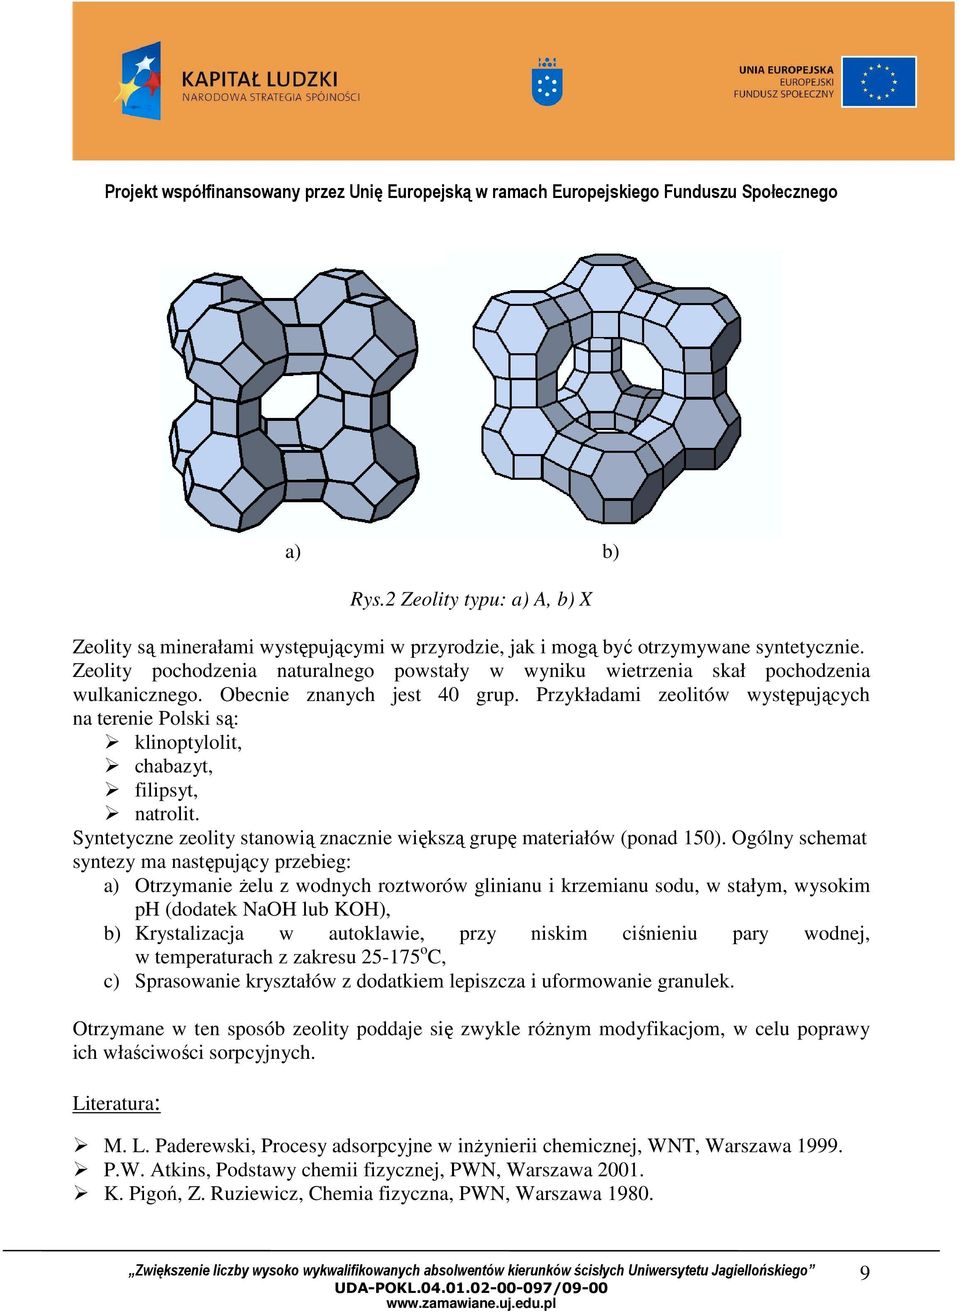 Przykładami zeolitów występujących na terenie Polski są: klinoptylolit, chabazyt, filipsyt, natrolit. Syntetyczne zeolity stanowią znacznie większą grupę materiałów (ponad 150).